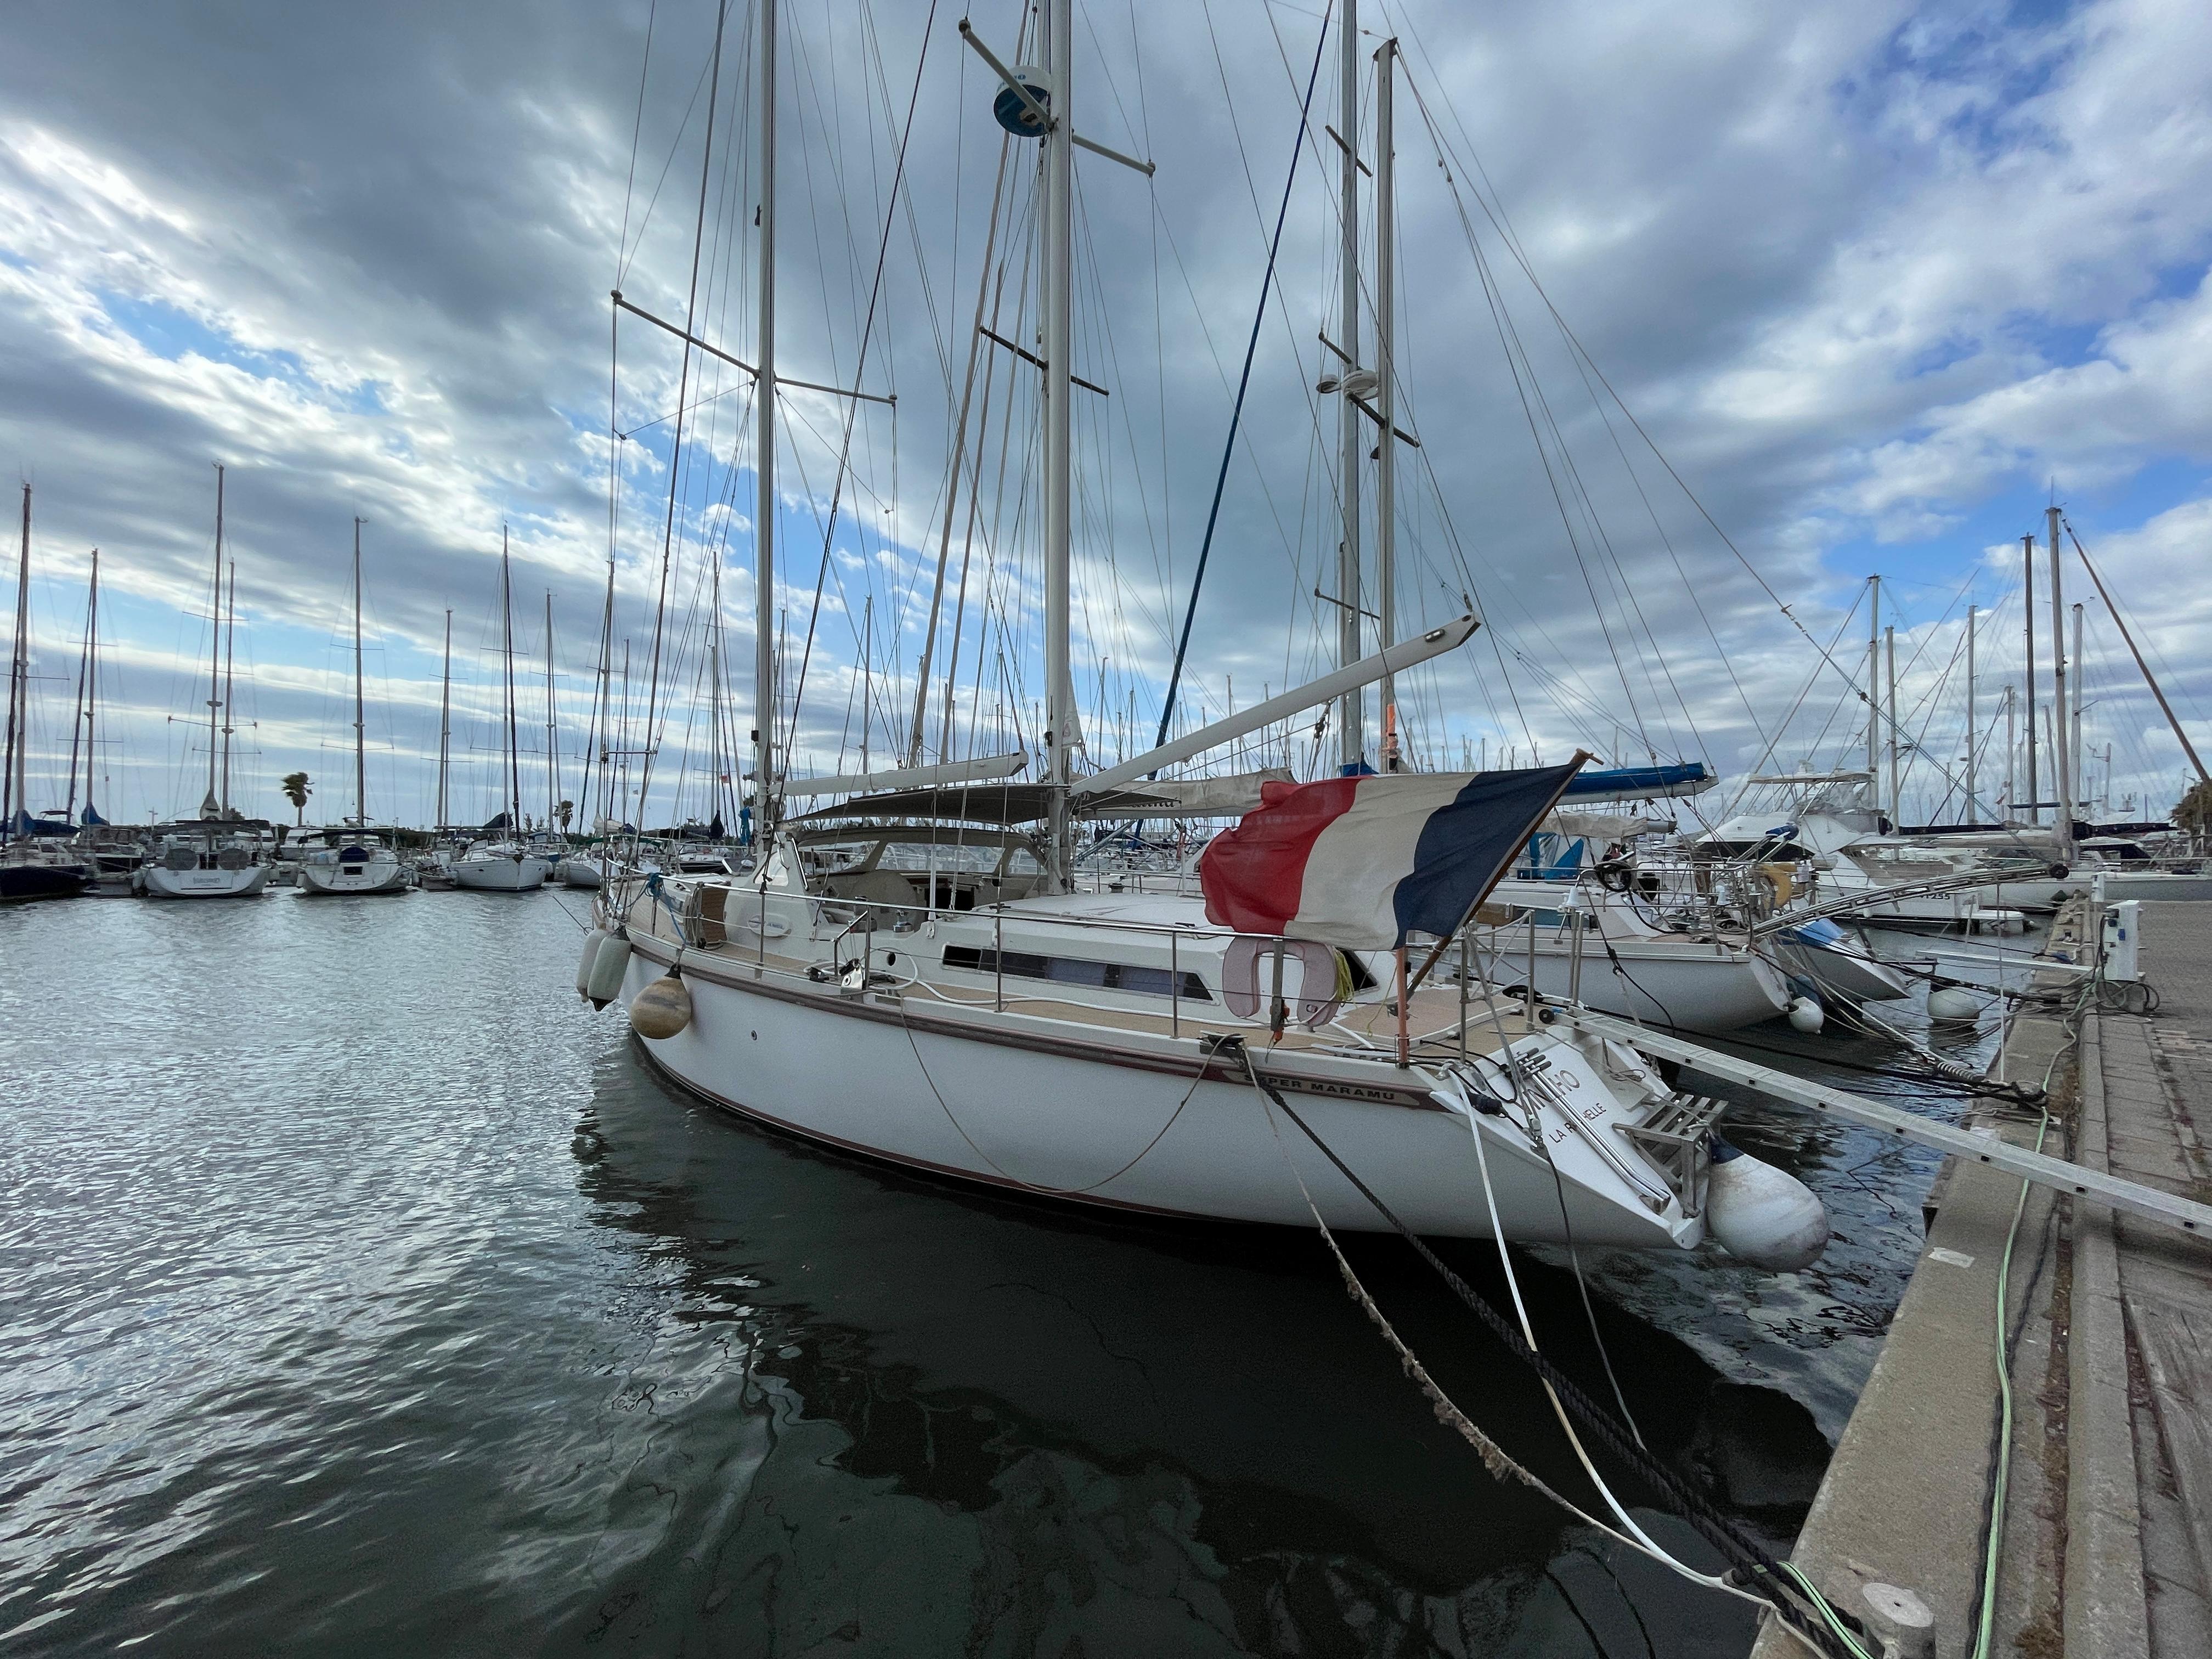 2014 Jeanneau Sun Odyssey 44ds Yacht for Sale | 44 JEANNEAU Yachts